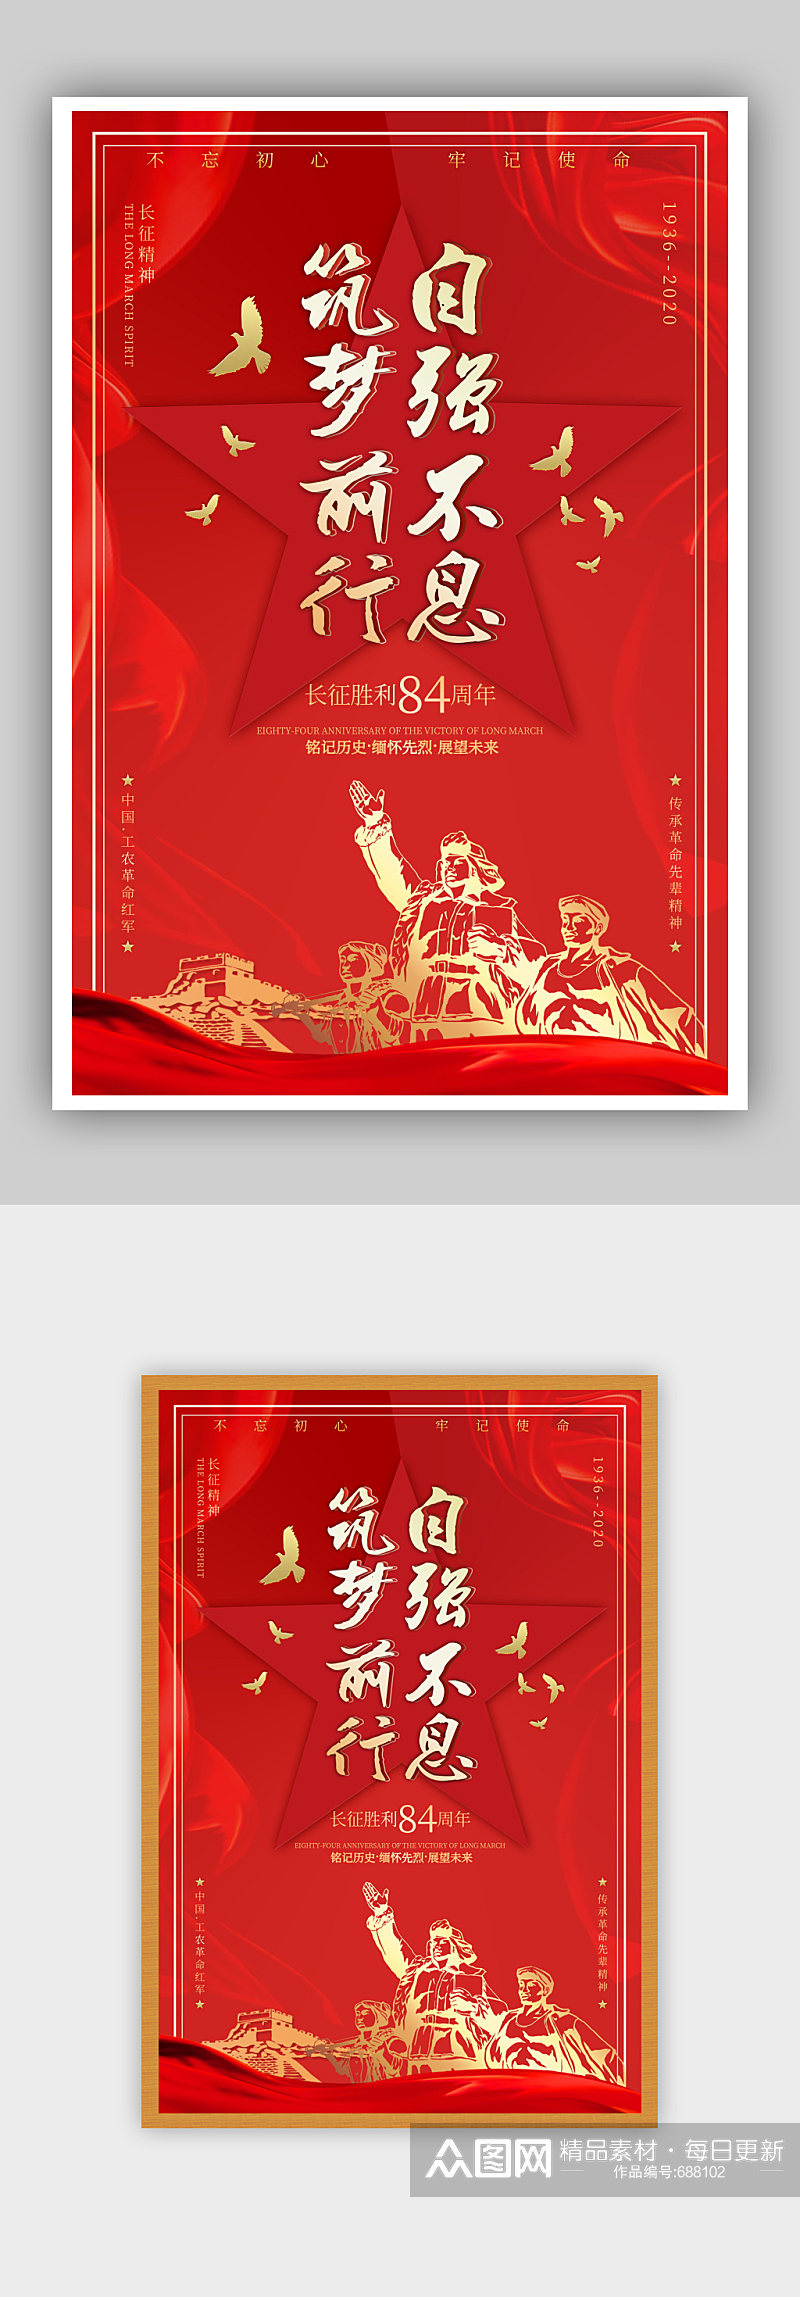 大气红色纪念长征胜利周年党建海报展板挂画素材